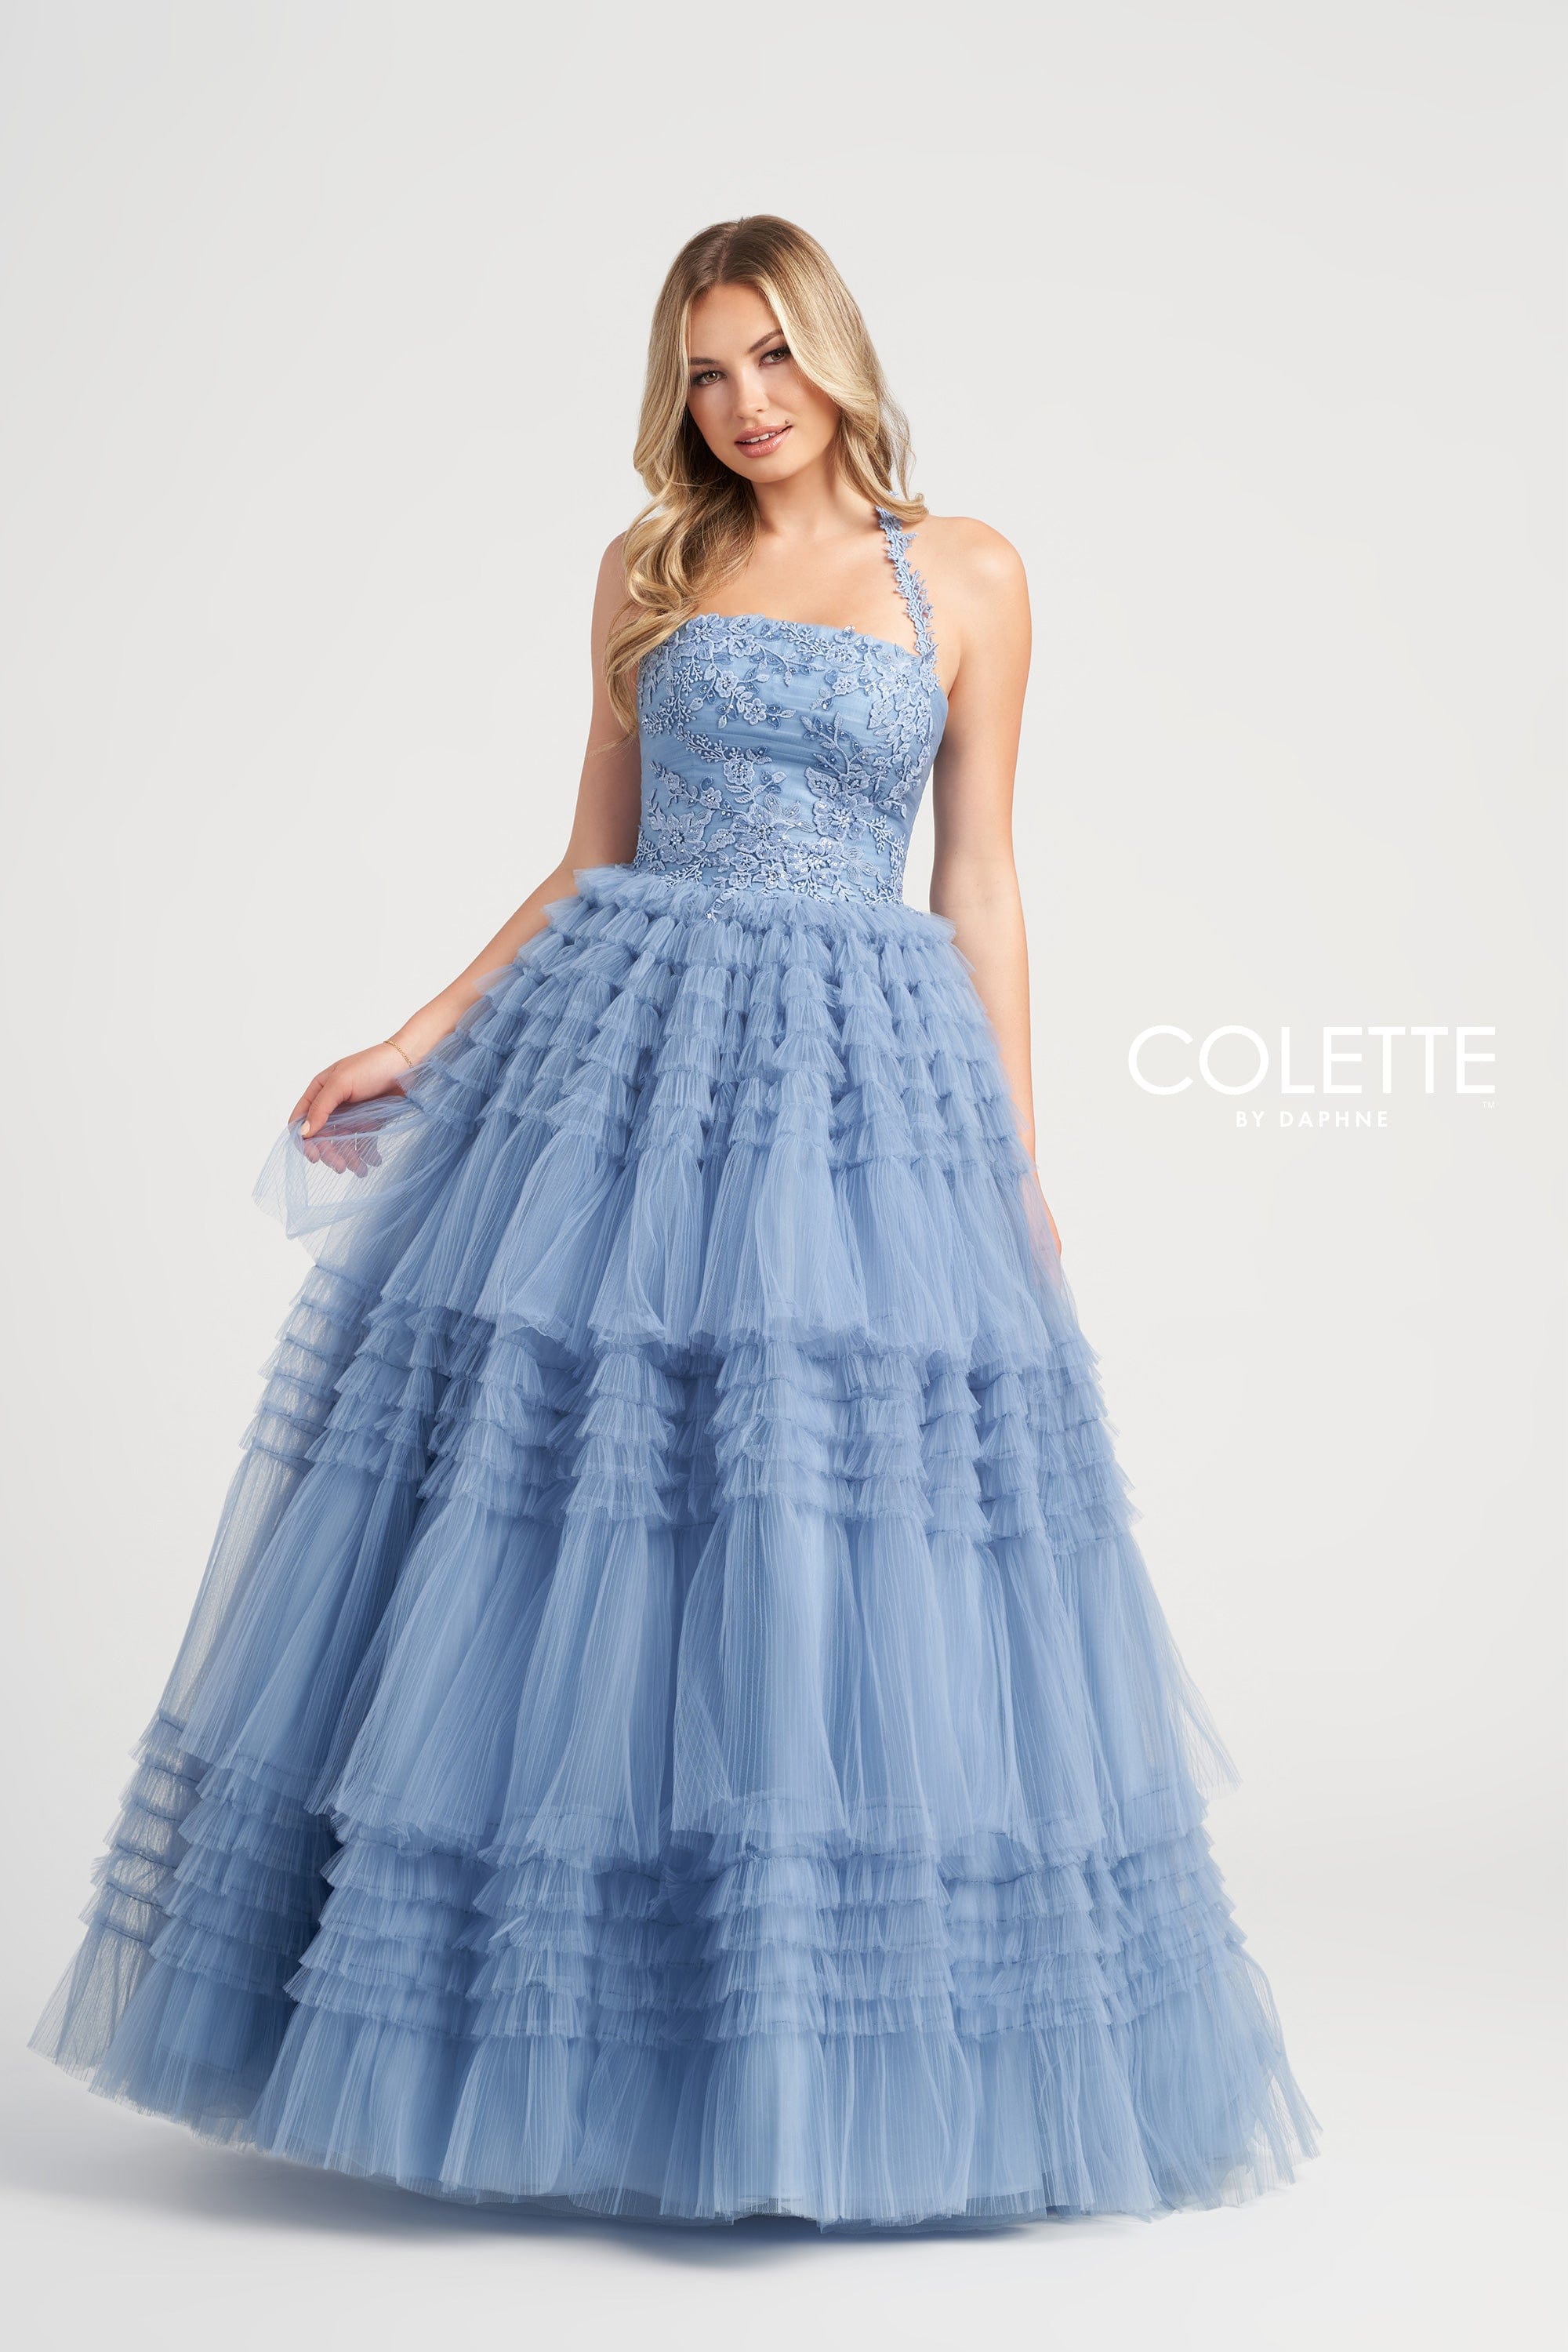 Colette for Mon Cheri Prom Colette: CL5163